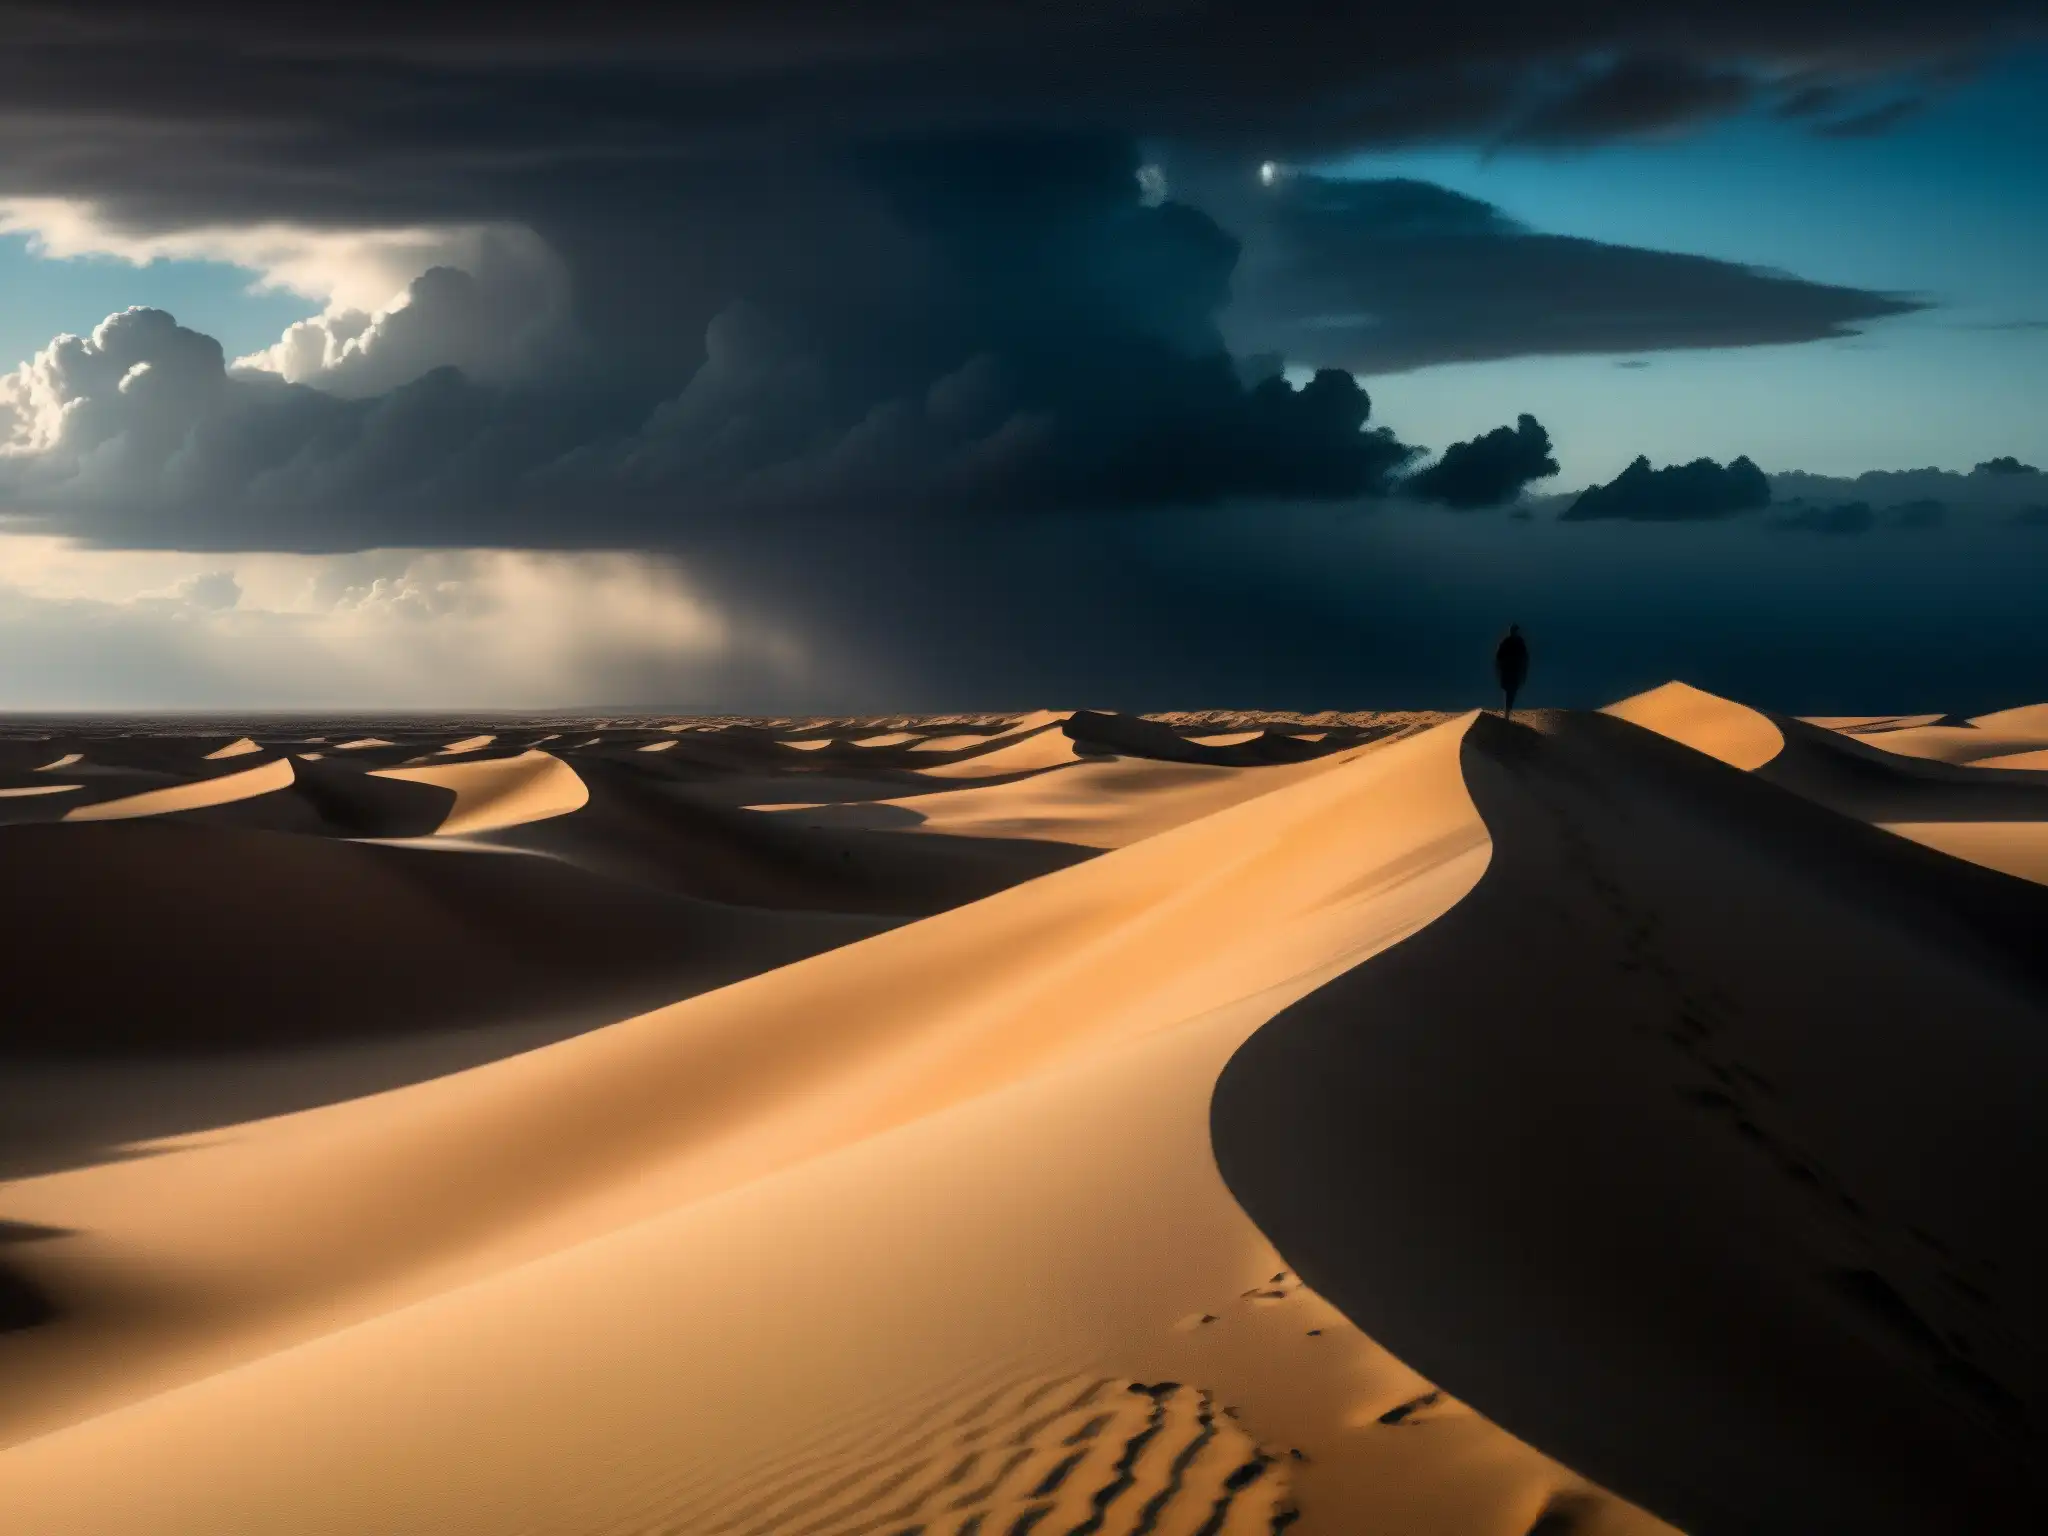 Figura solitaria en un desierto vasto, con nubes negras y presagio